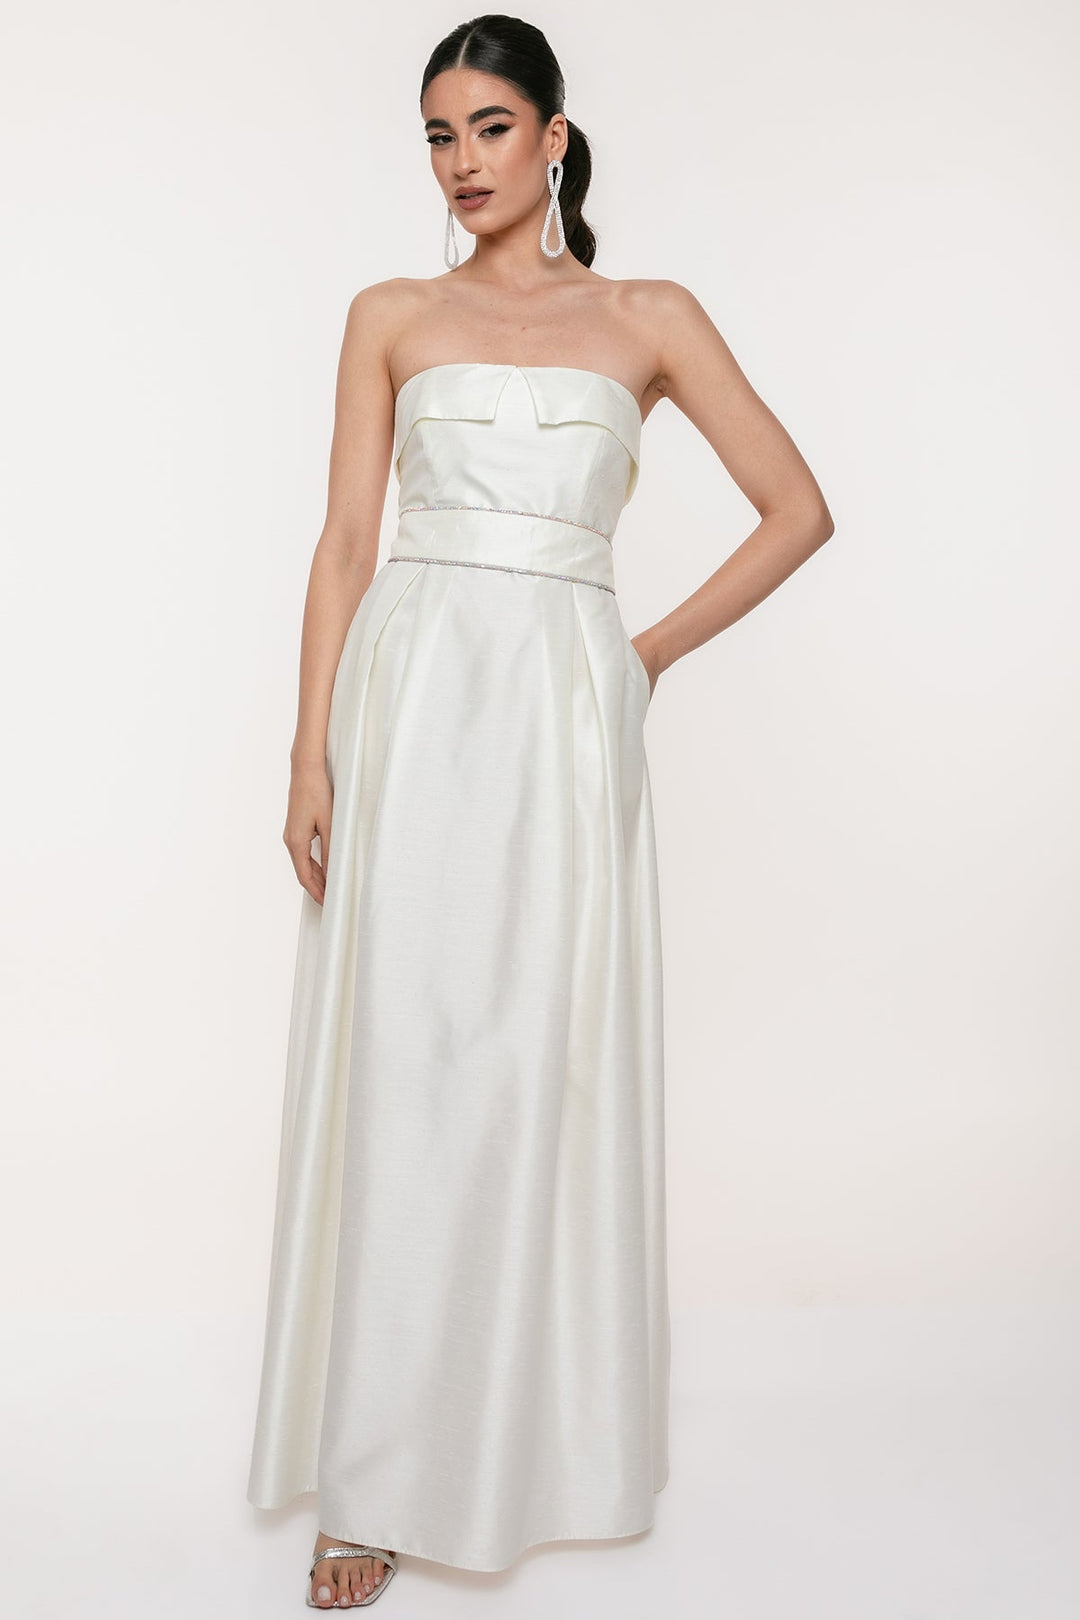 Φόρεμα μάξι λευκό σουα σοβαζ Coelia - A Collection Boutique